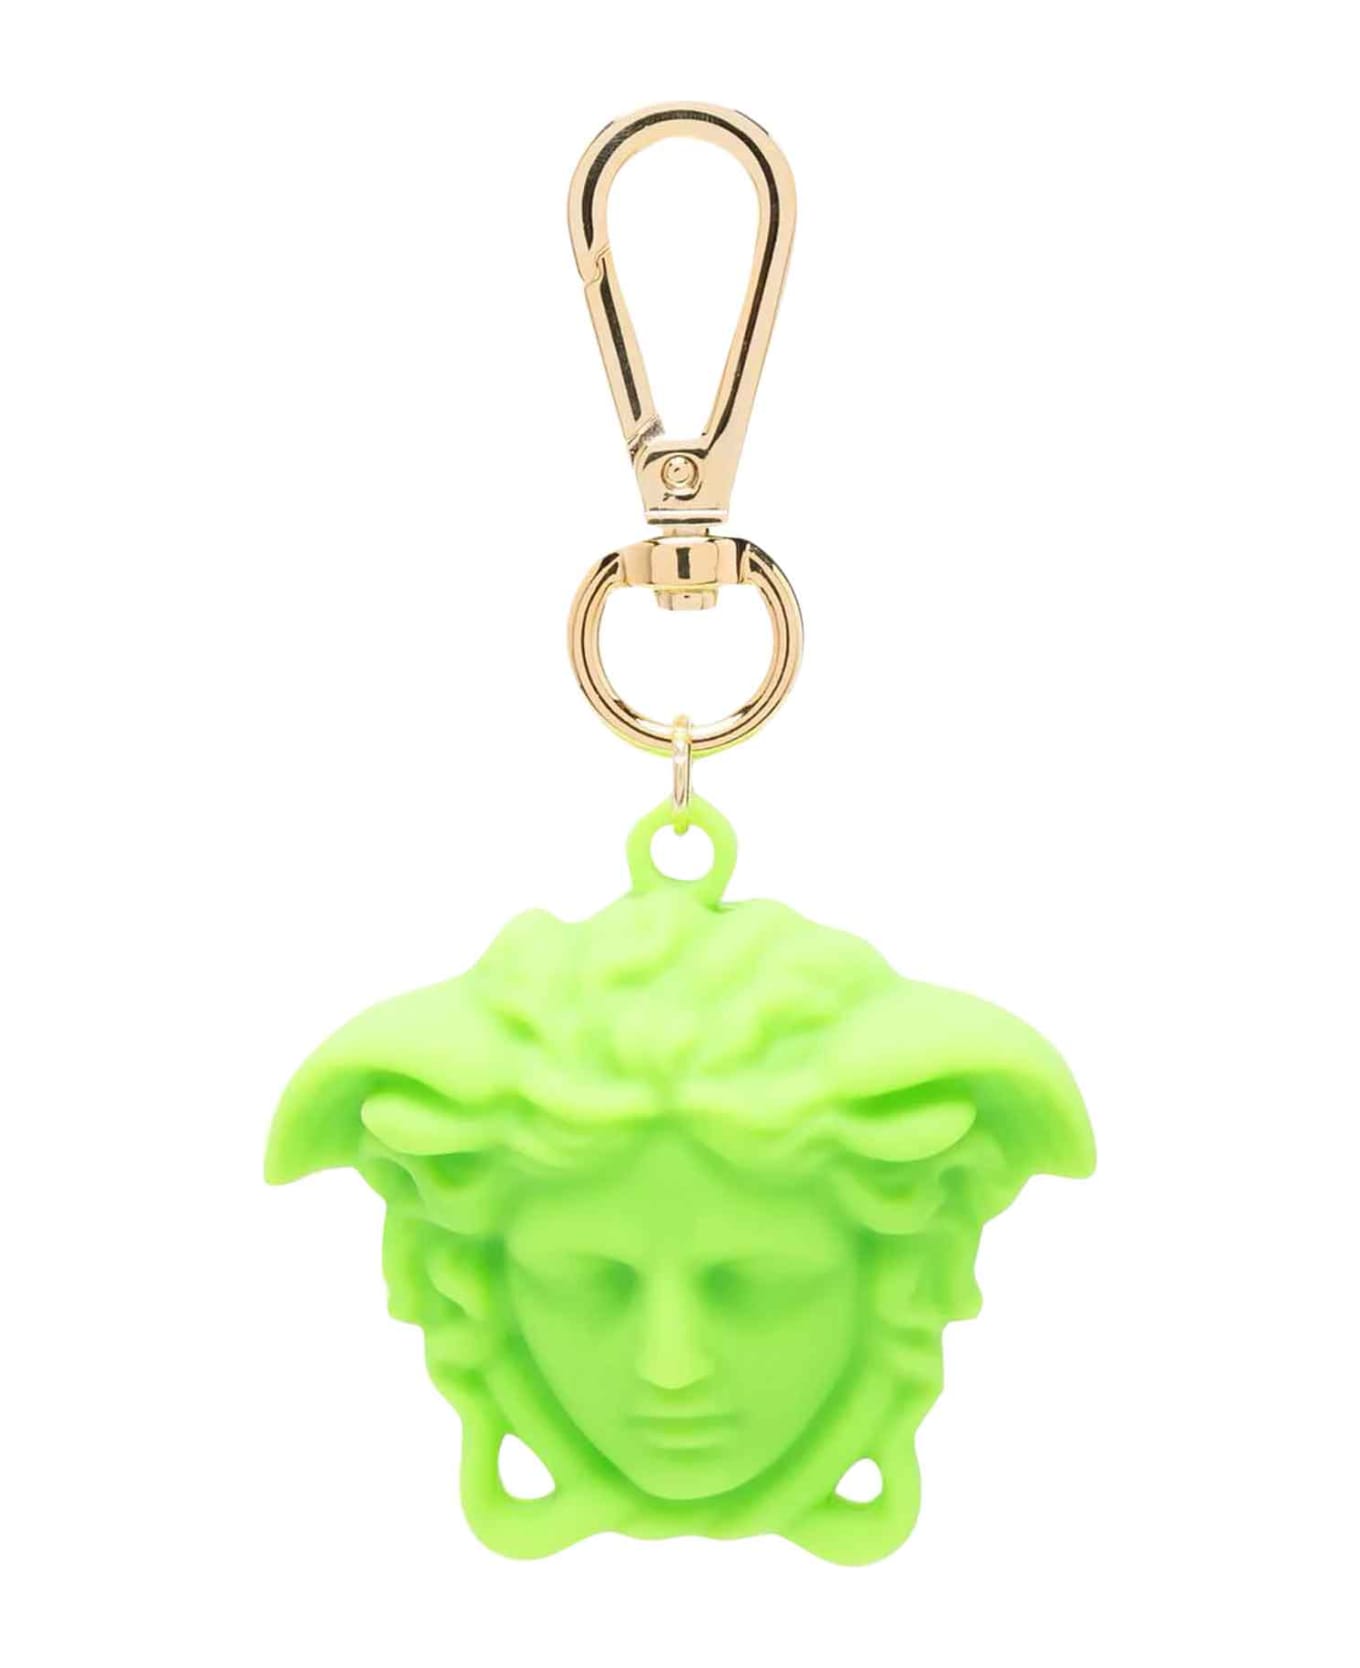 Versace Green Keychain Unisex Kids. - Verde/oro